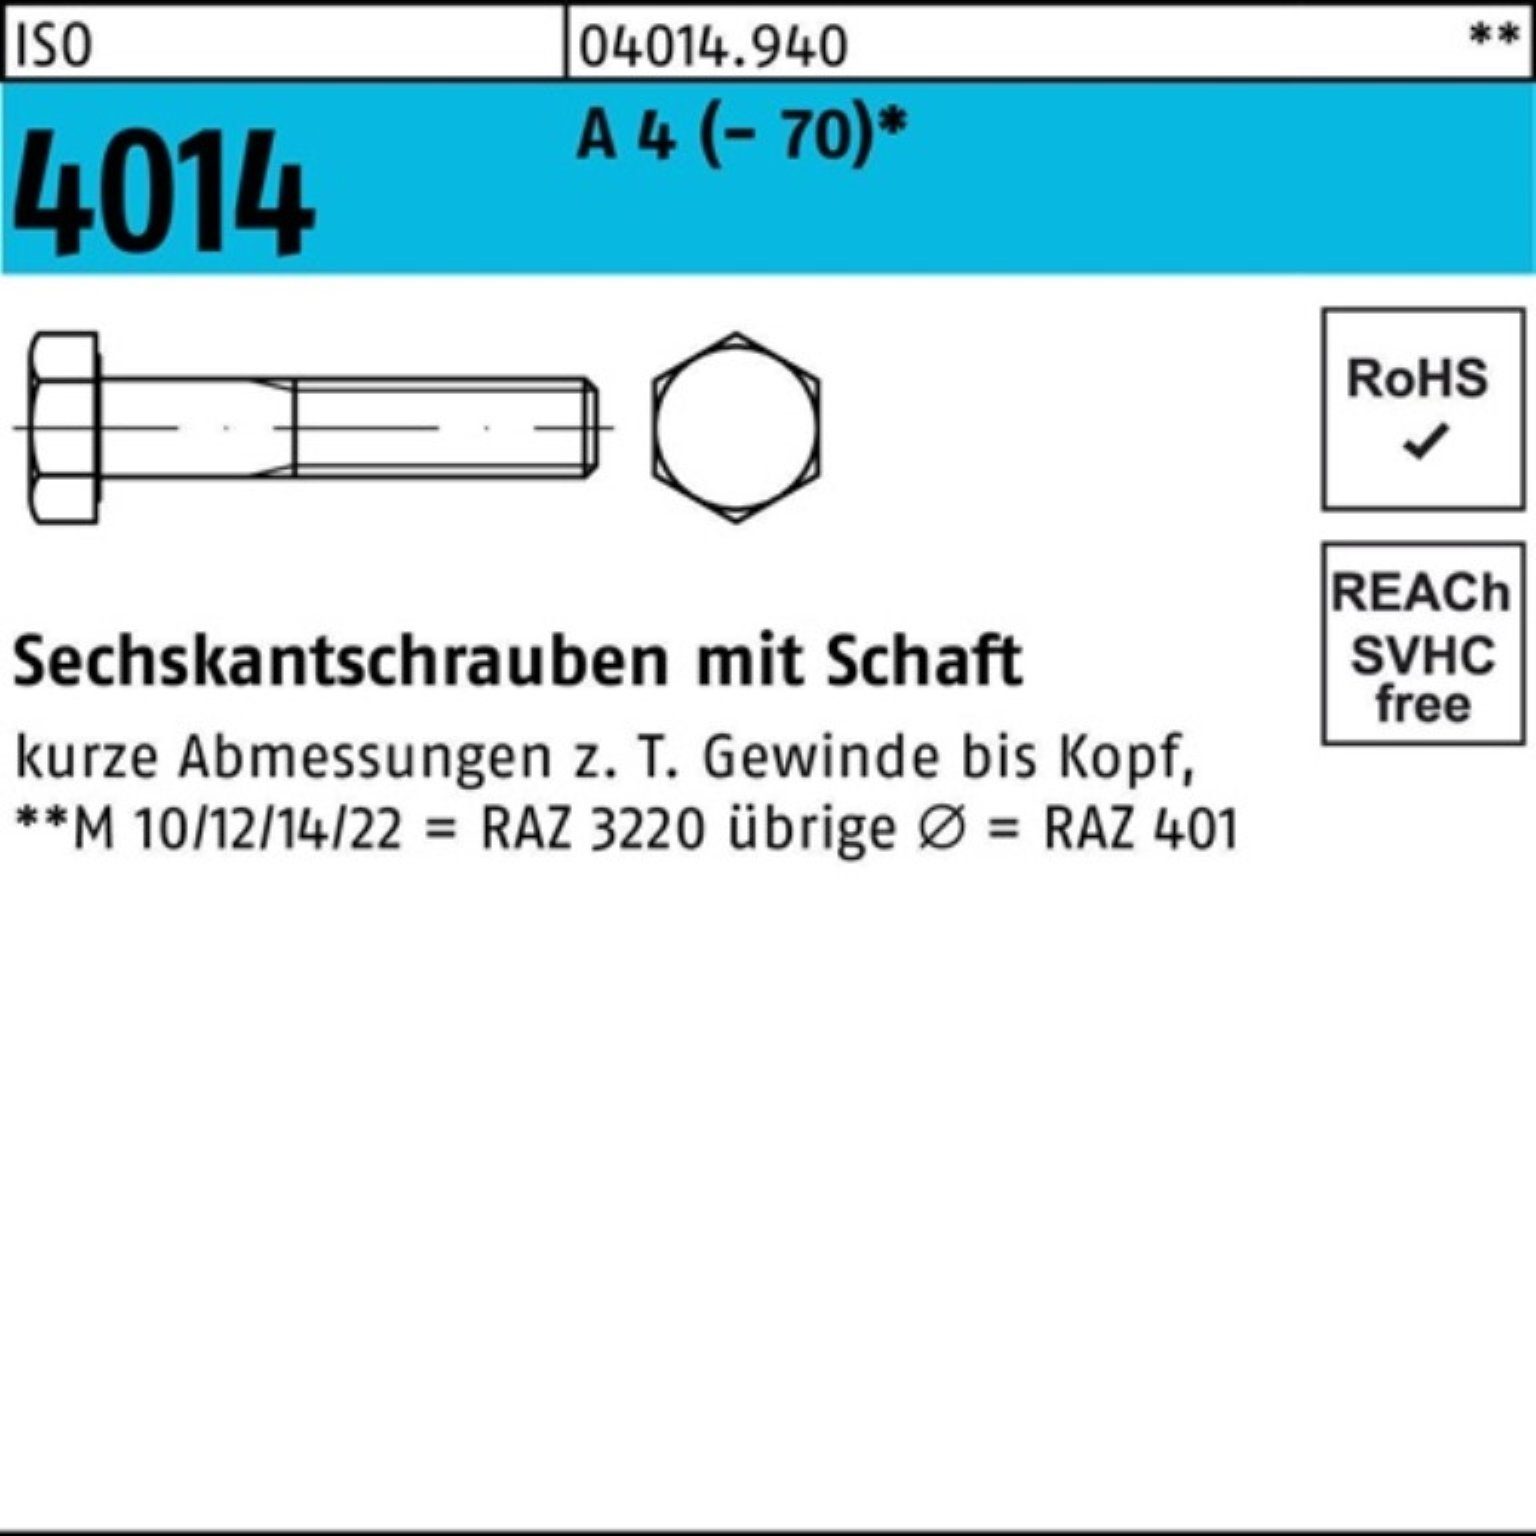 Bufab Sechskantschraube 100er Pack Sechskantschraube ISO 4014 Schaft M8x 45 A 4 (70) 100 St